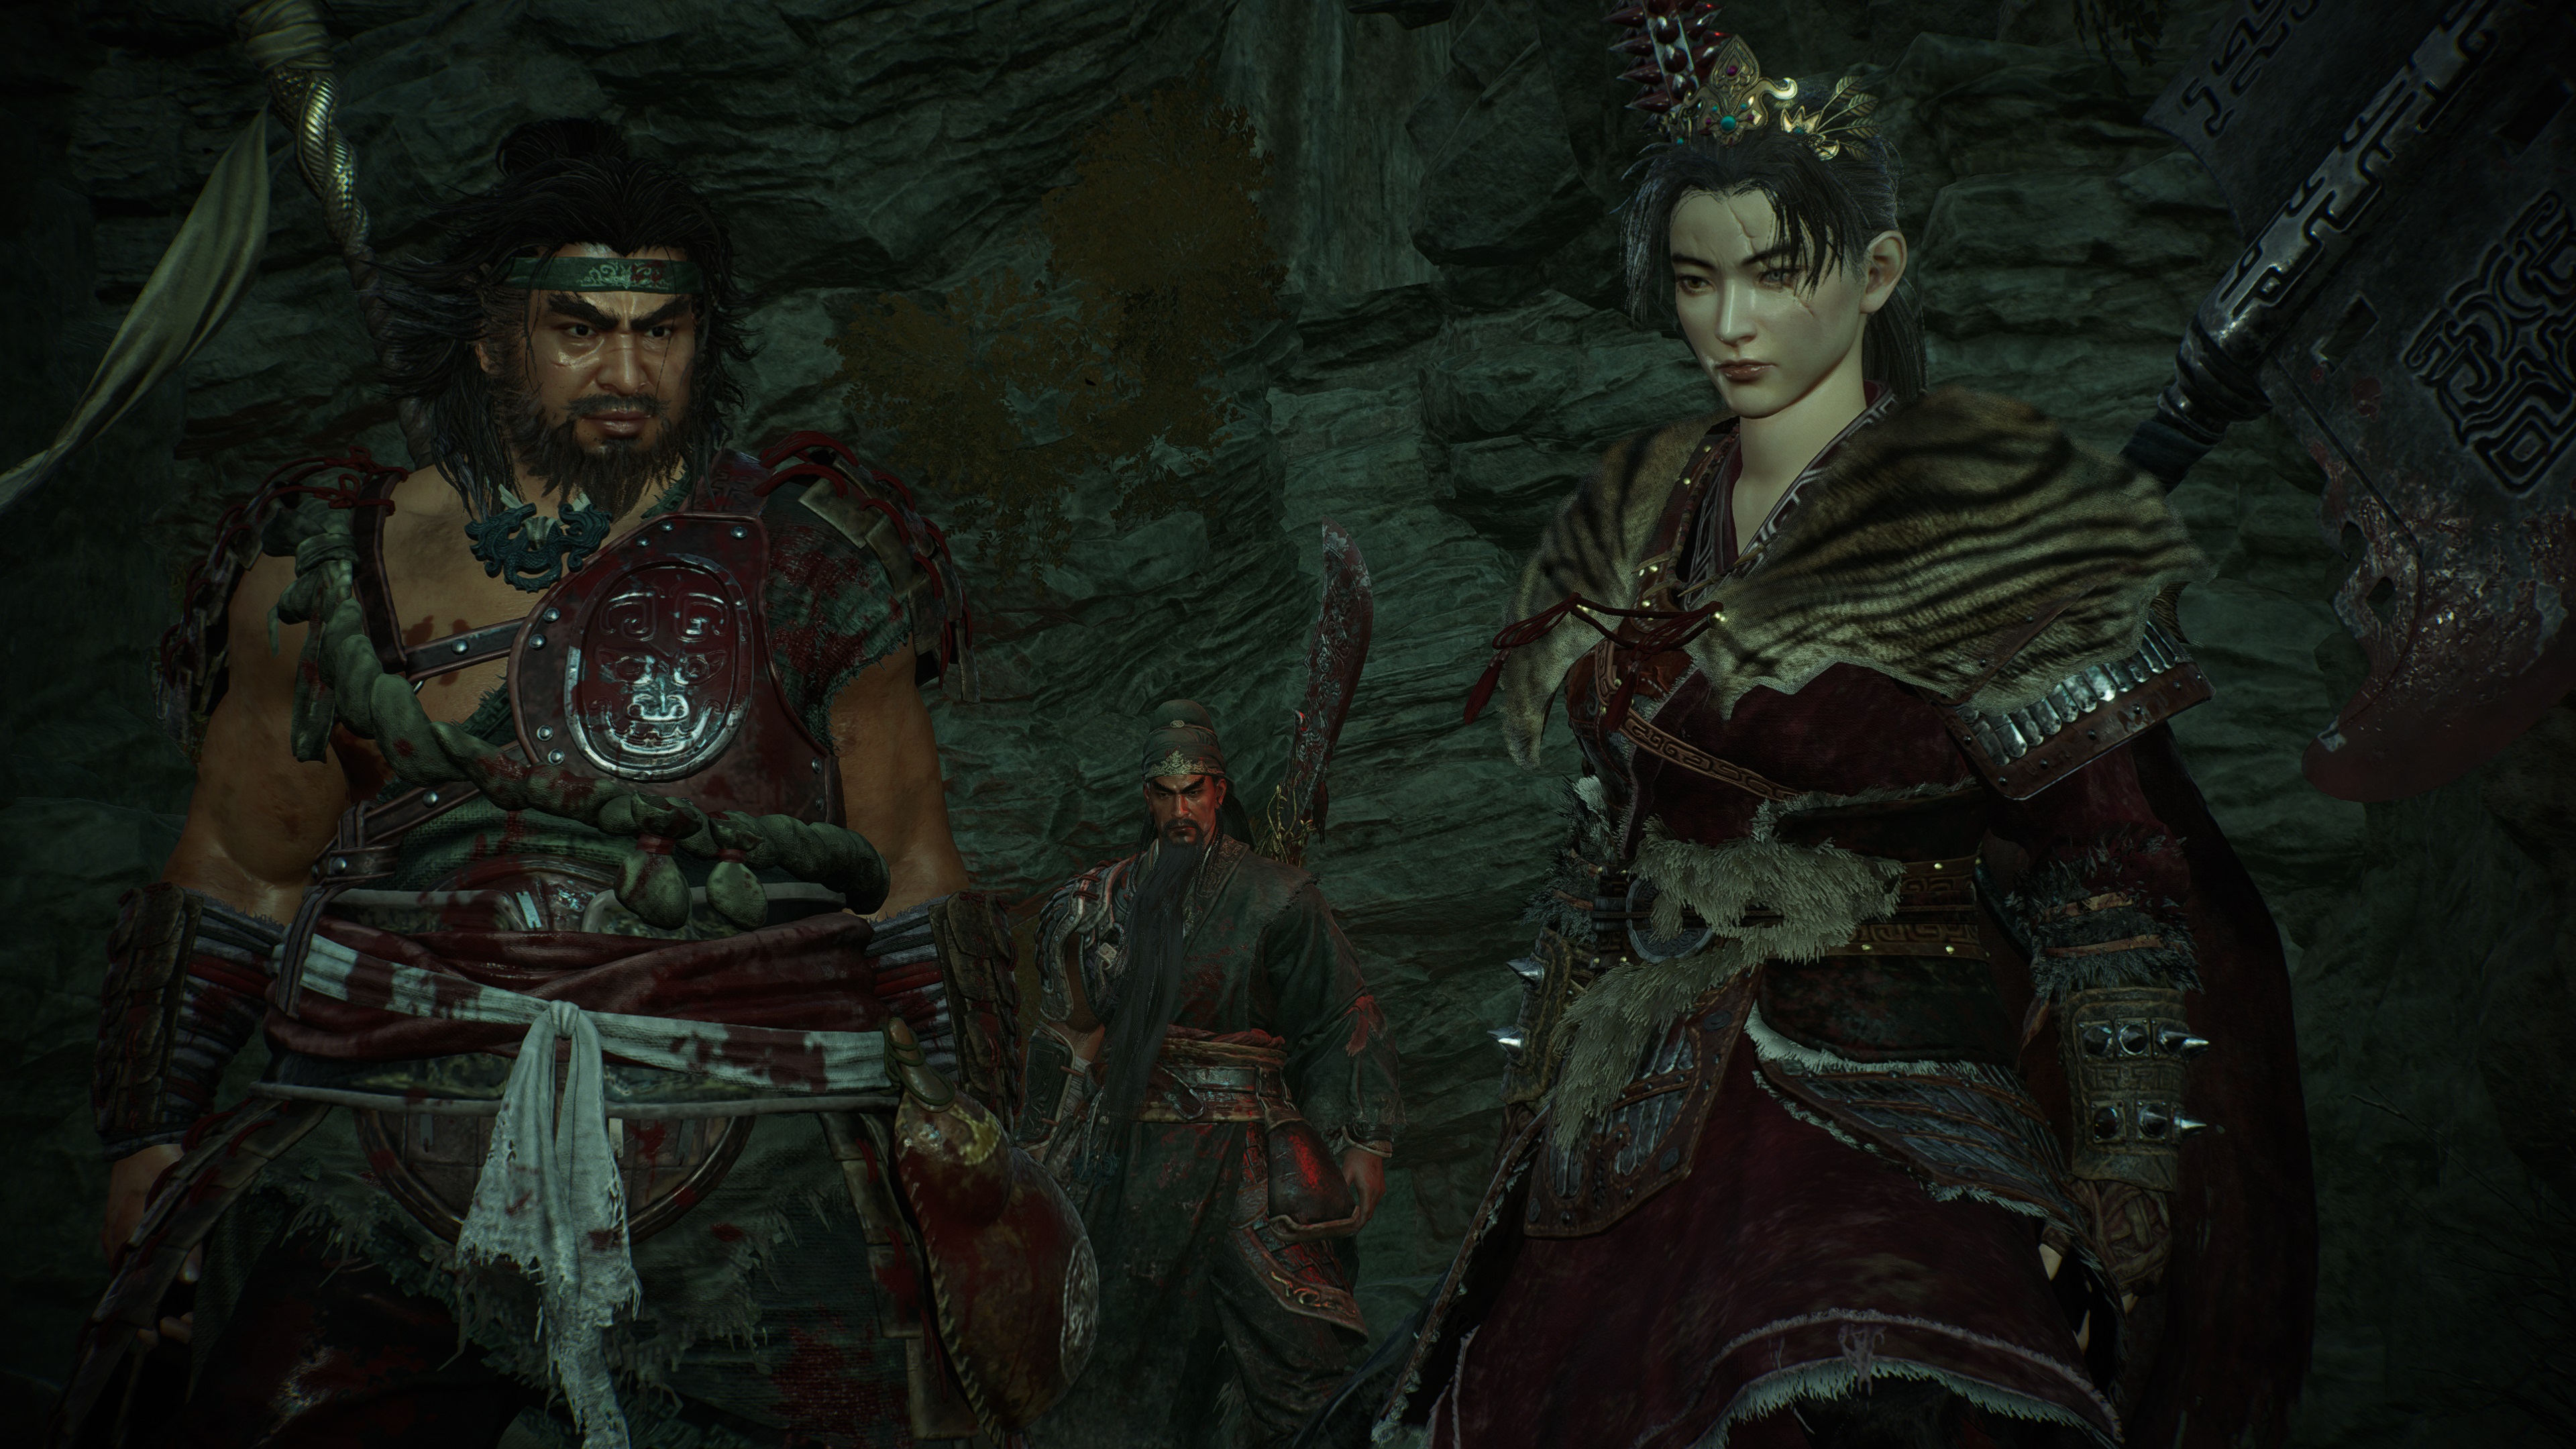 Captura de pantalla del juego Wo Long: Fallen Dynasty del jugador junto a aliados NPC, tomada en modo Fotografía.